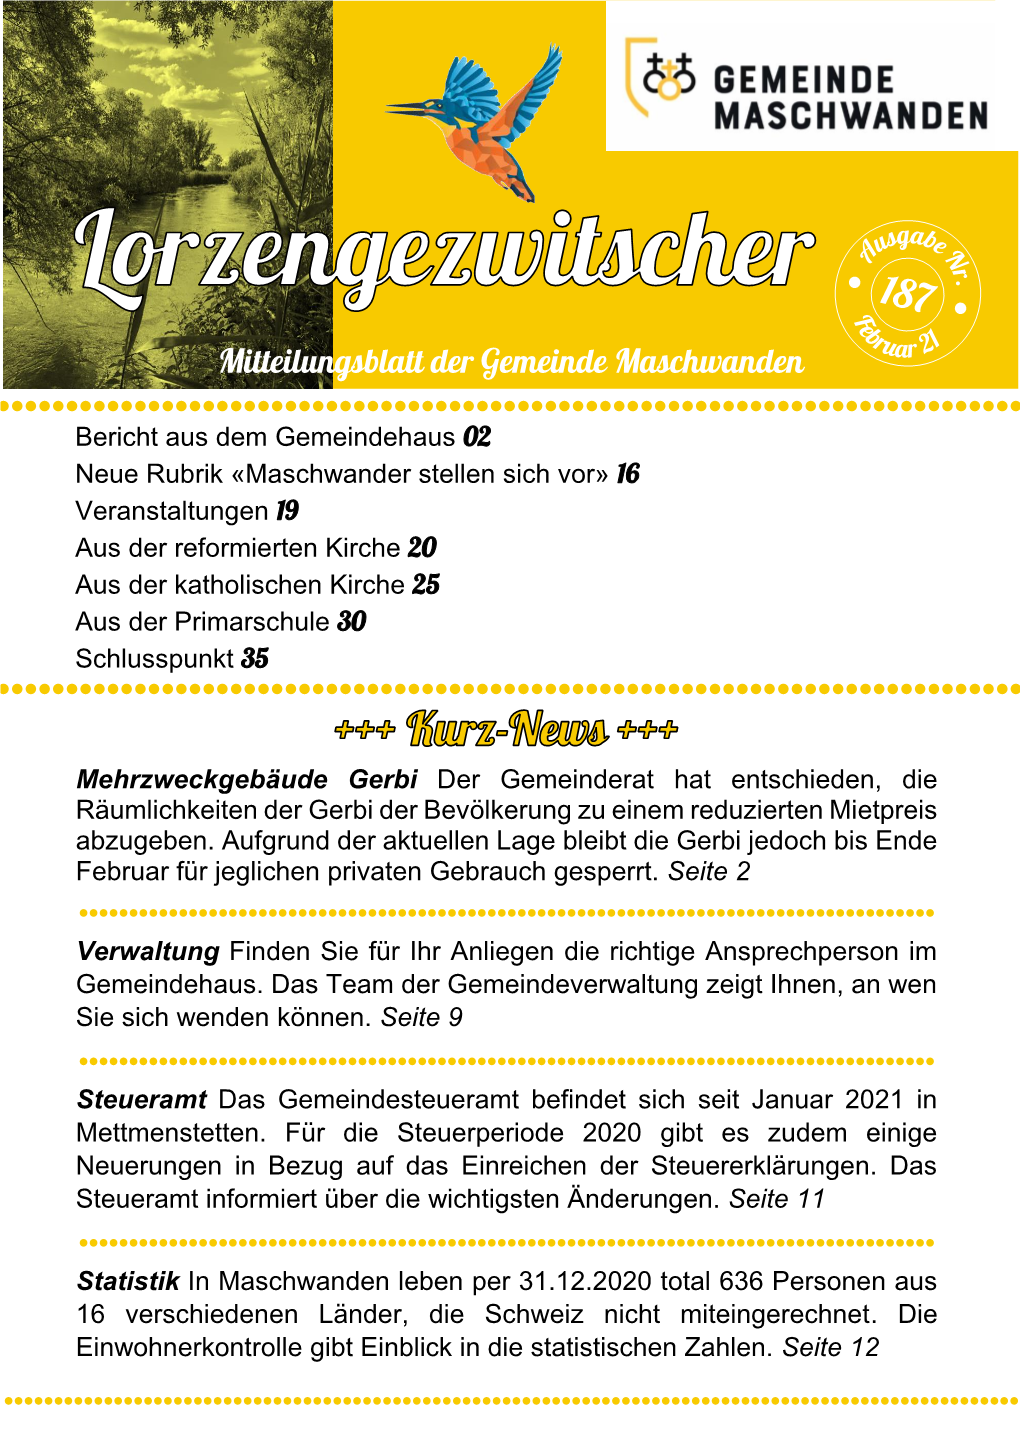 Mitteilungsblatt Der Gemeinde Maschwanden ⚫⚫⚫⚫⚫⚫⚫⚫⚫⚫⚫⚫⚫⚫⚫⚫⚫⚫⚫⚫⚫⚫⚫⚫⚫⚫⚫⚫⚫⚫⚫⚫⚫⚫⚫⚫⚫⚫⚫⚫⚫⚫⚫⚫⚫⚫⚫⚫⚫⚫⚫⚫⚫⚫⚫⚫⚫⚫⚫⚫⚫⚫⚫⚫⚫⚫⚫⚫⚫⚫⚫⚫⚫⚫⚫ ⚫ Bericht Aus Dem Gemeindehaus 02